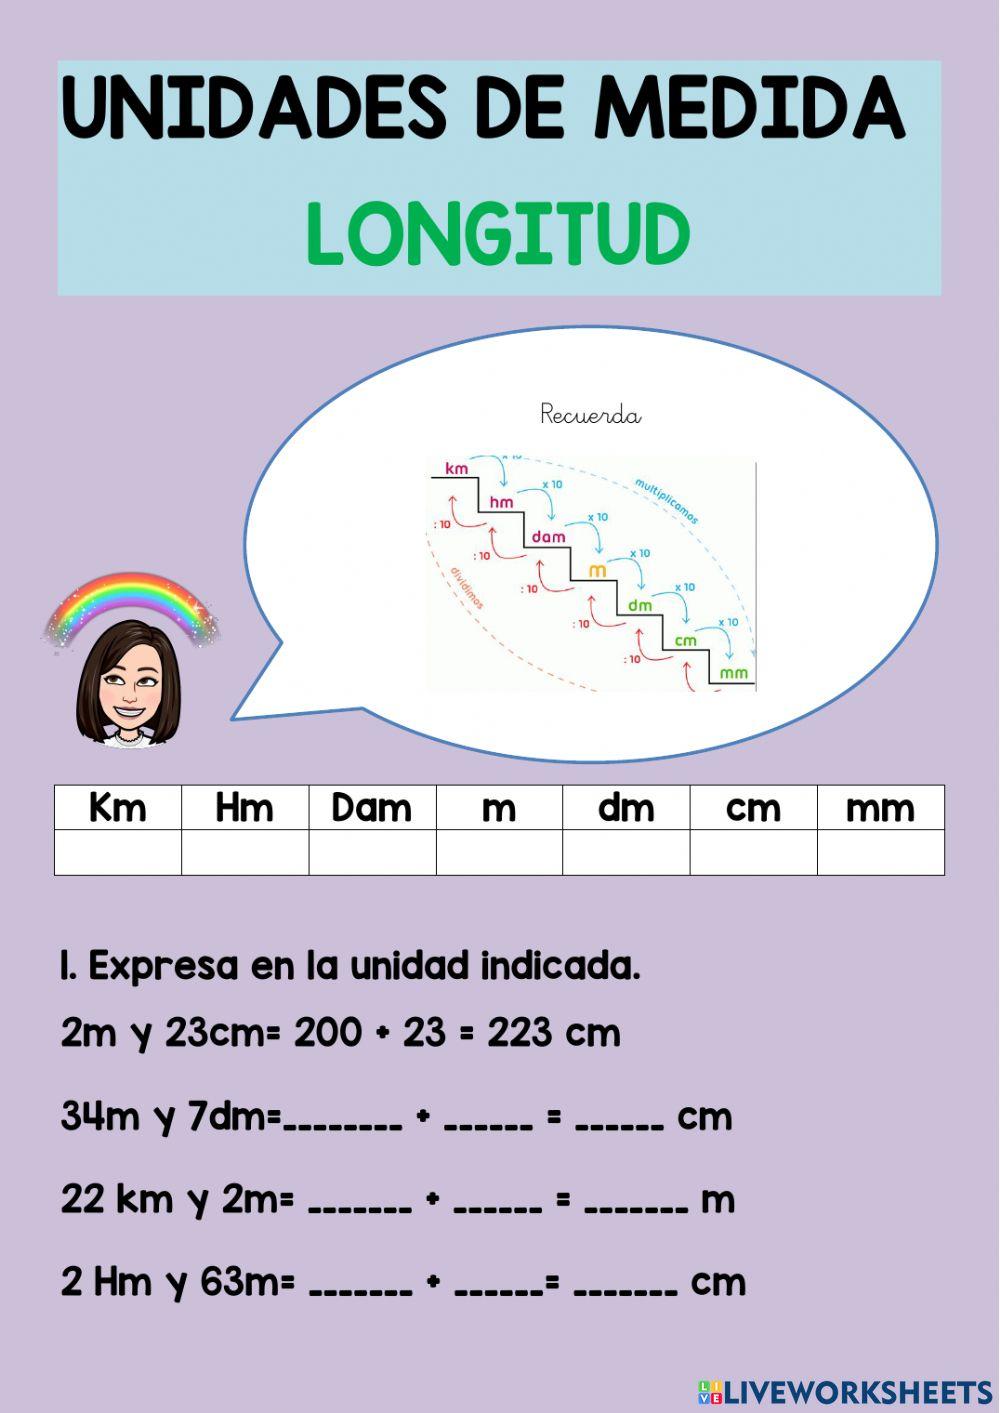 U.m: longitud